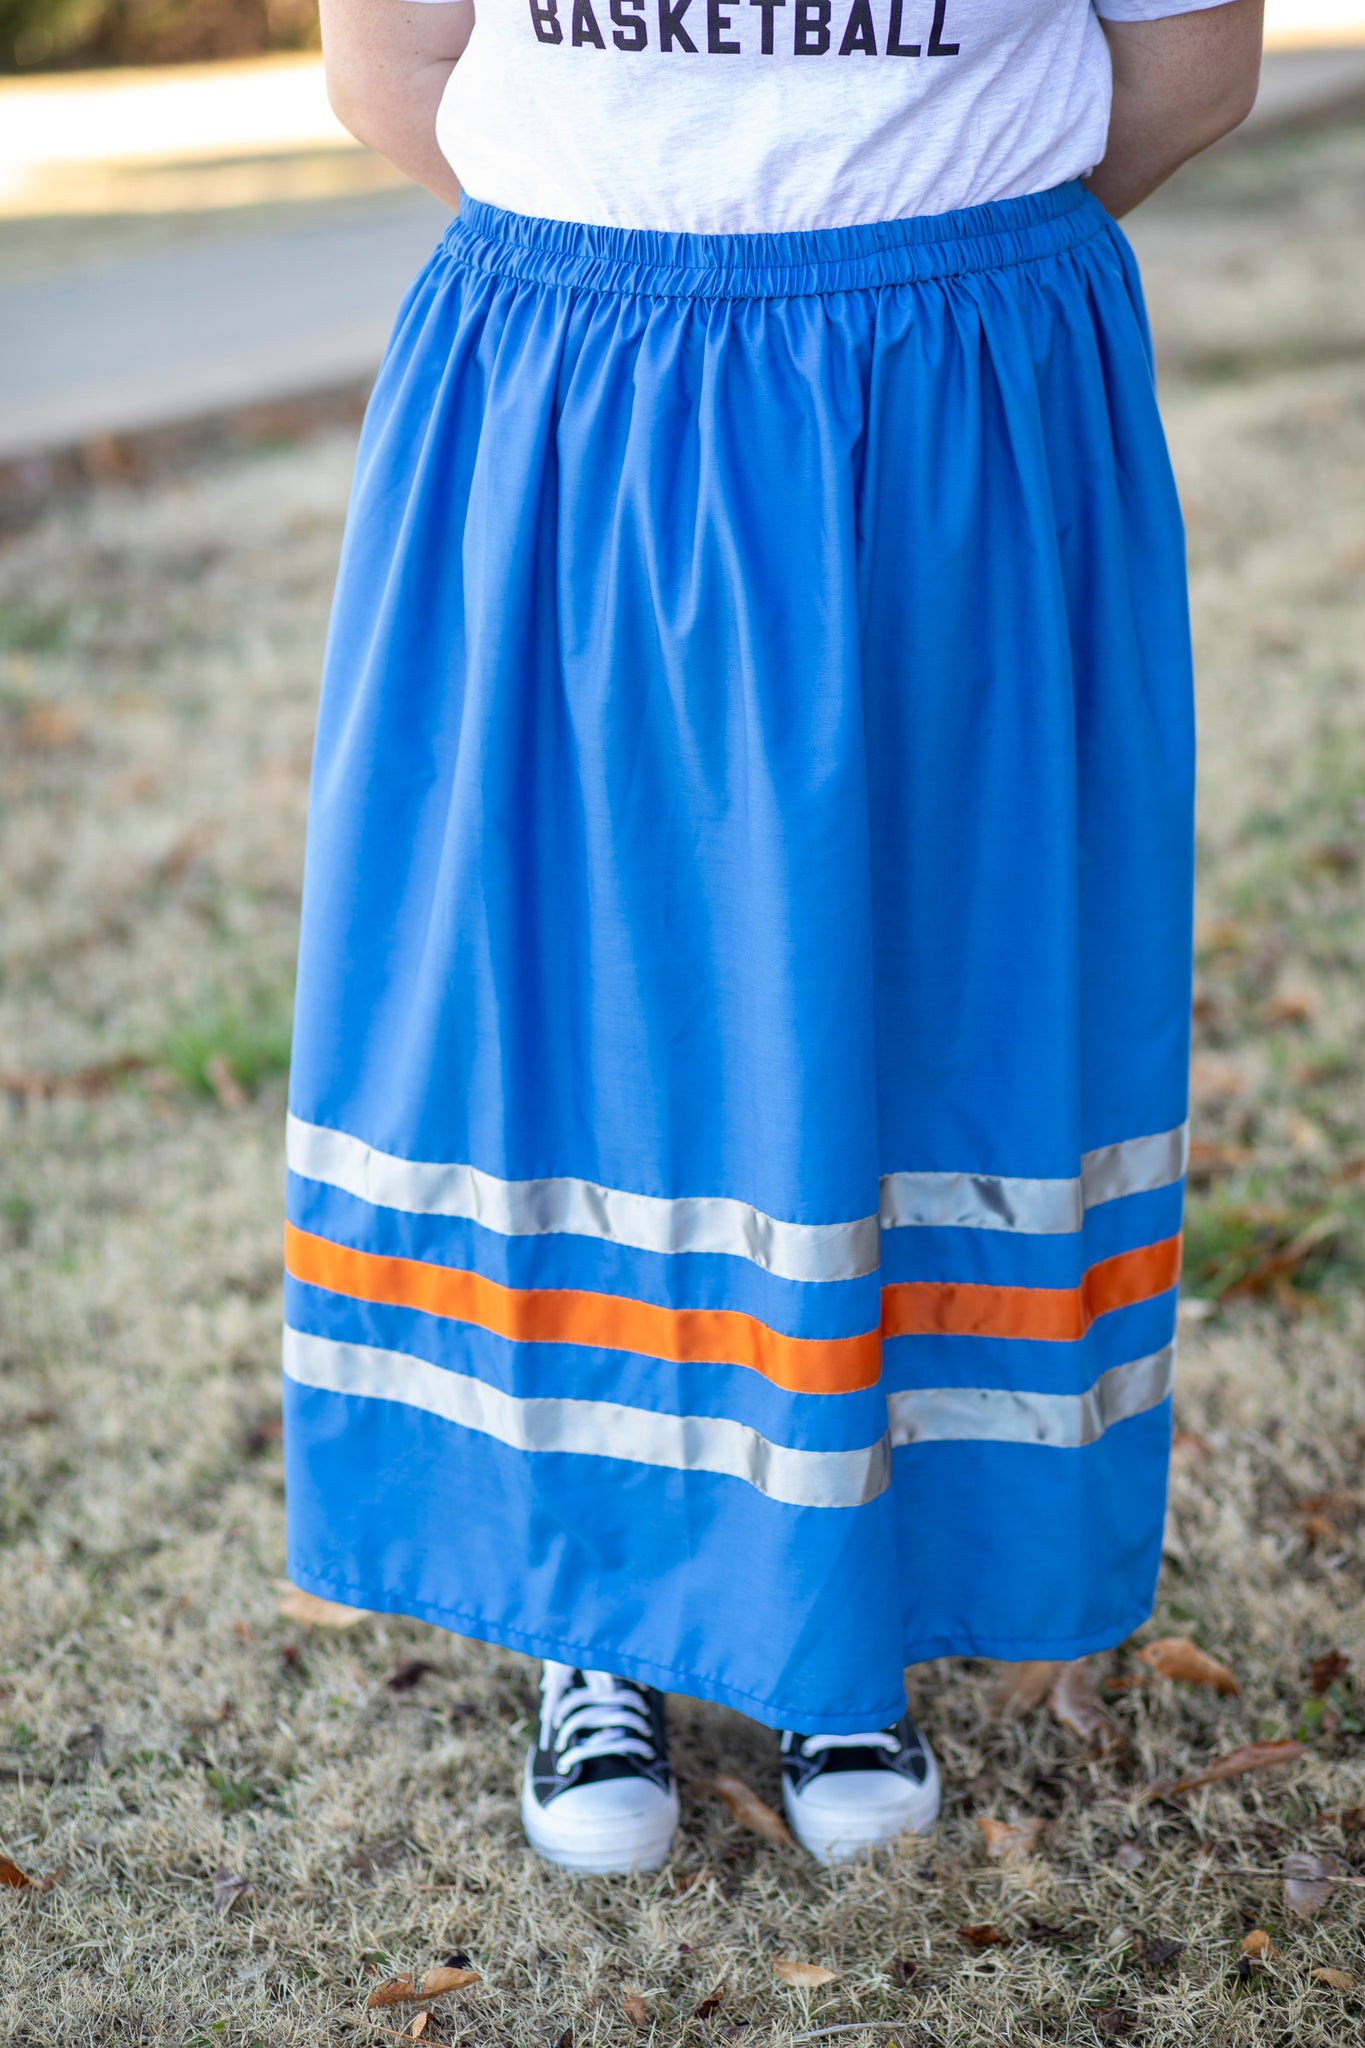 Blue Ribbon Skirt